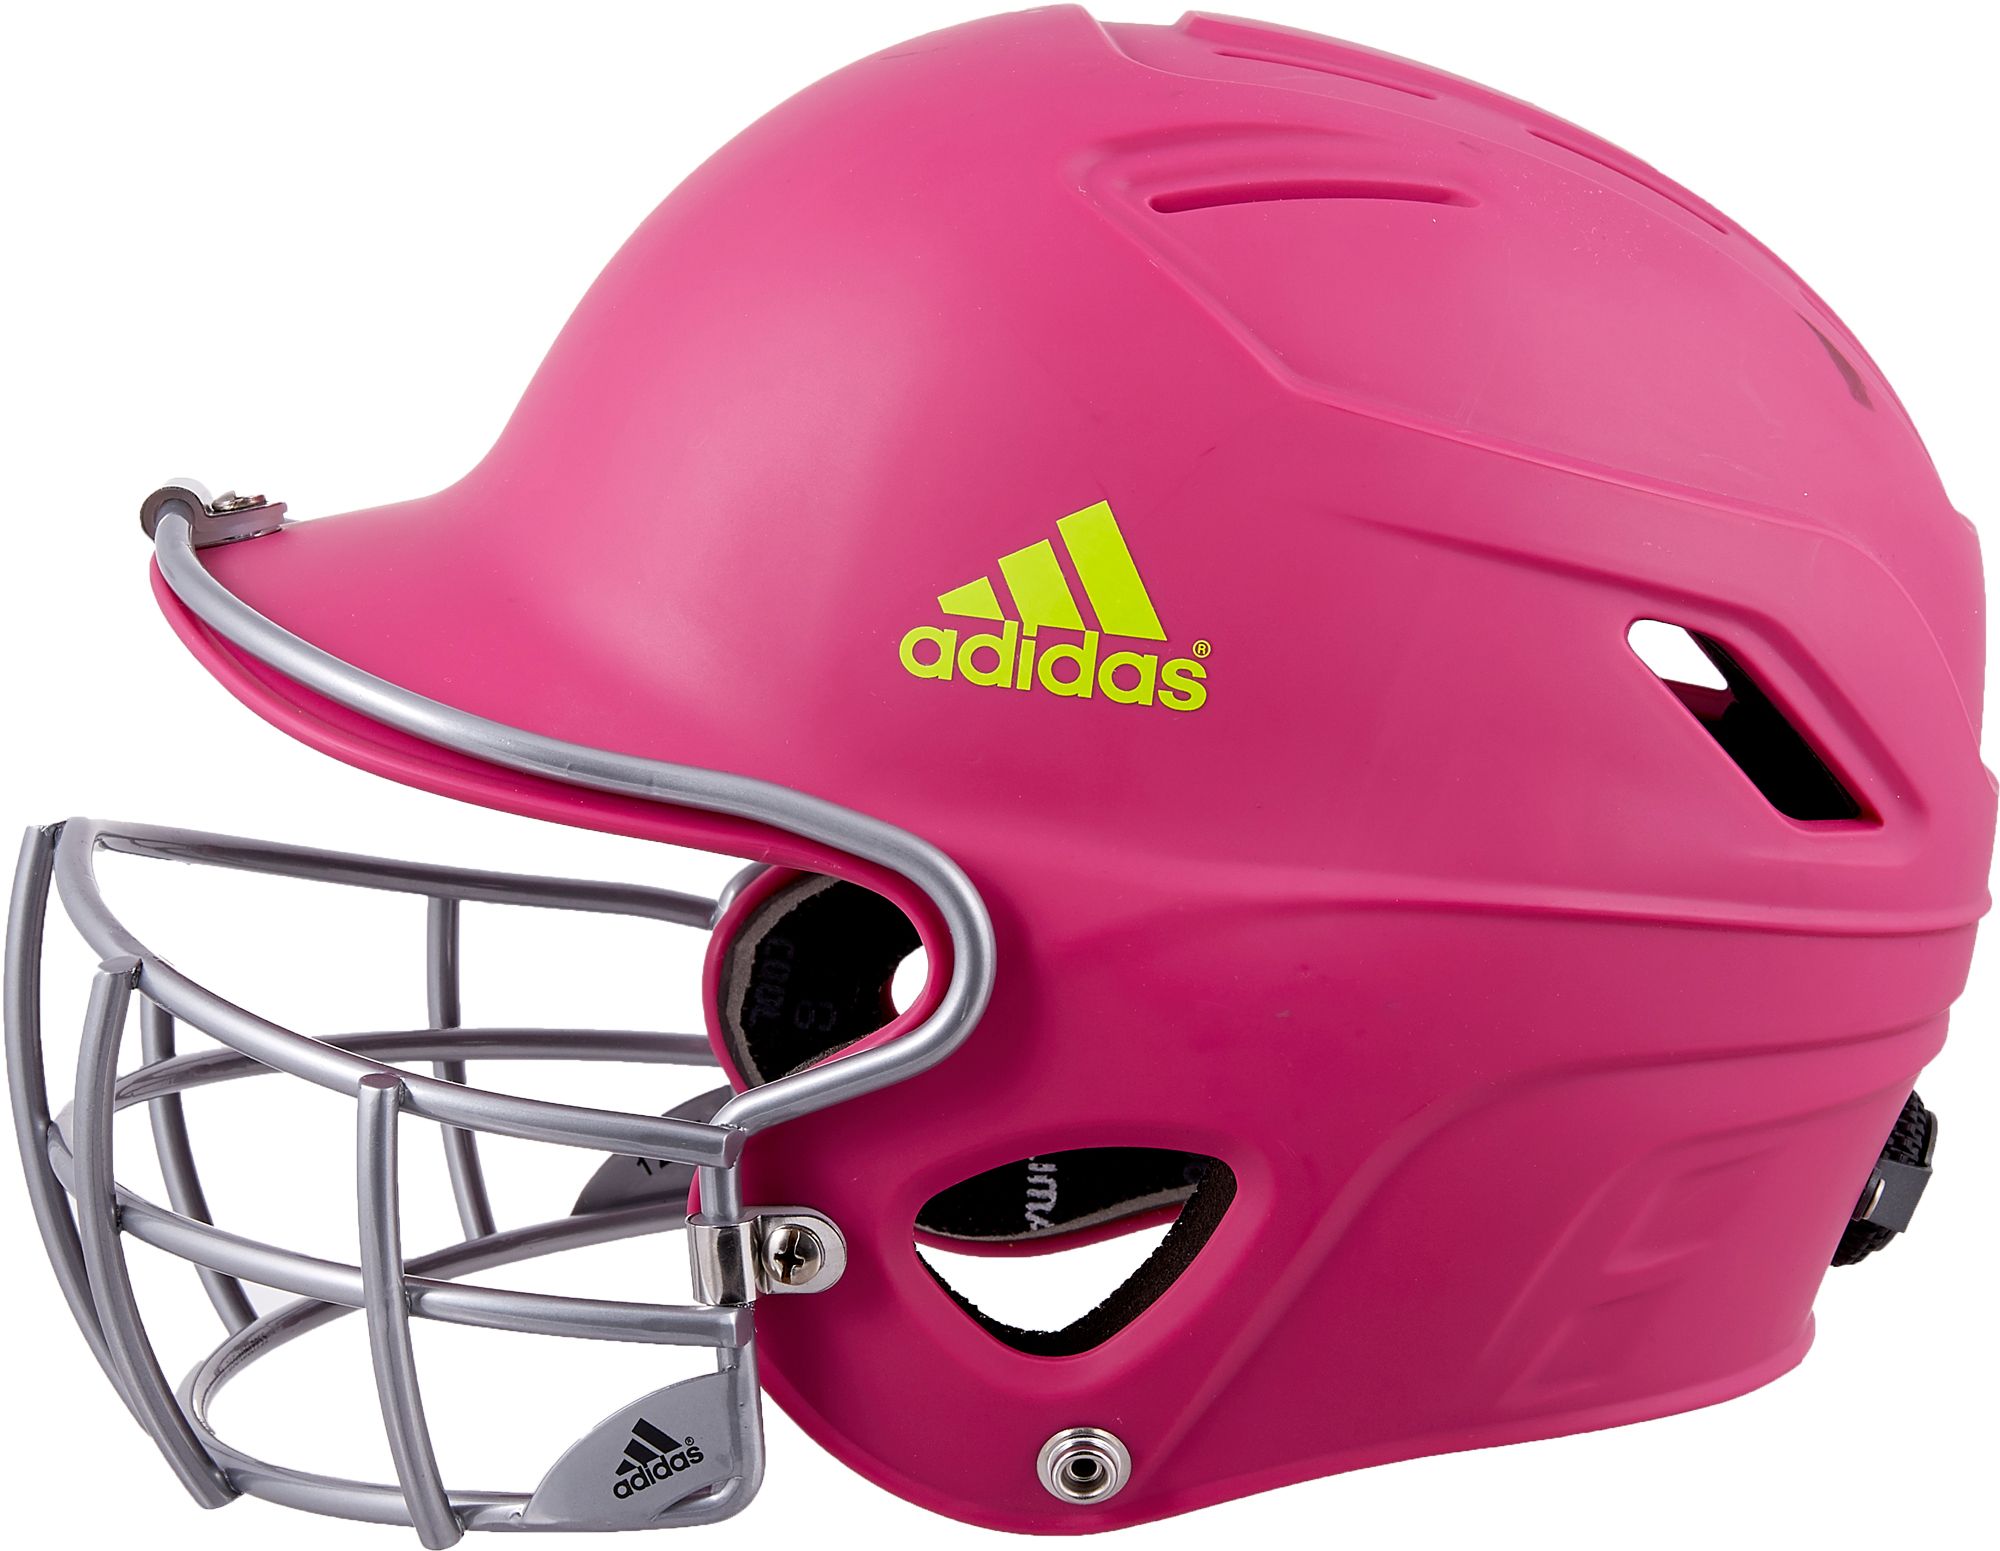 adidas adjustable softball helmet